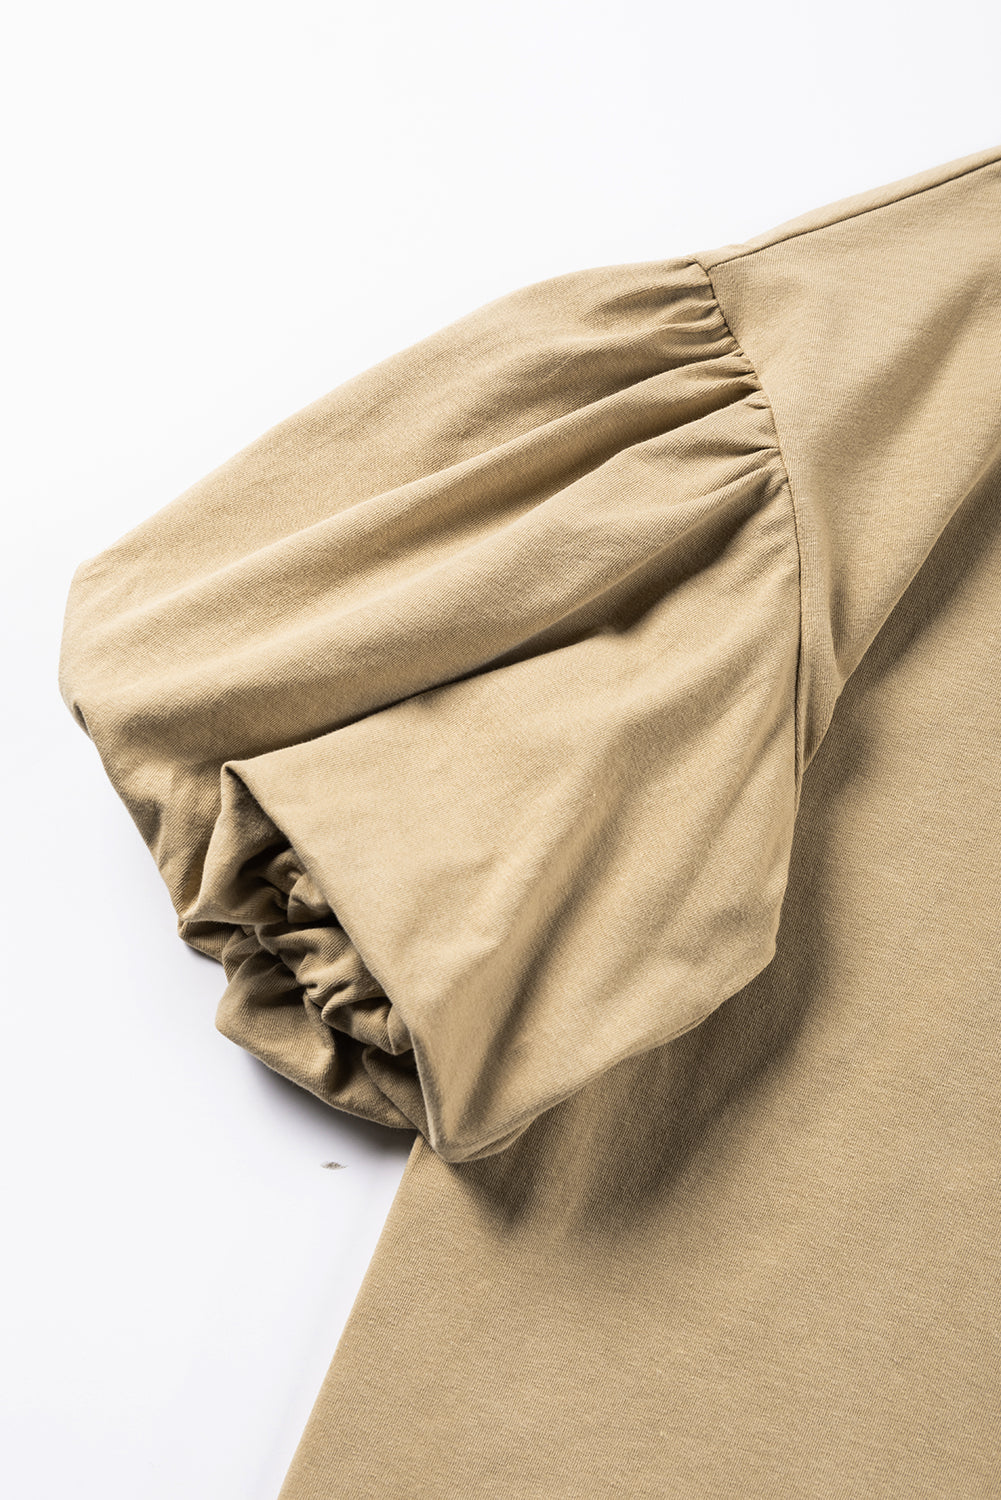 Einfarbige Bluse in hellfranzösischem Beige mit Laternenärmeln und überschnittener Schulter